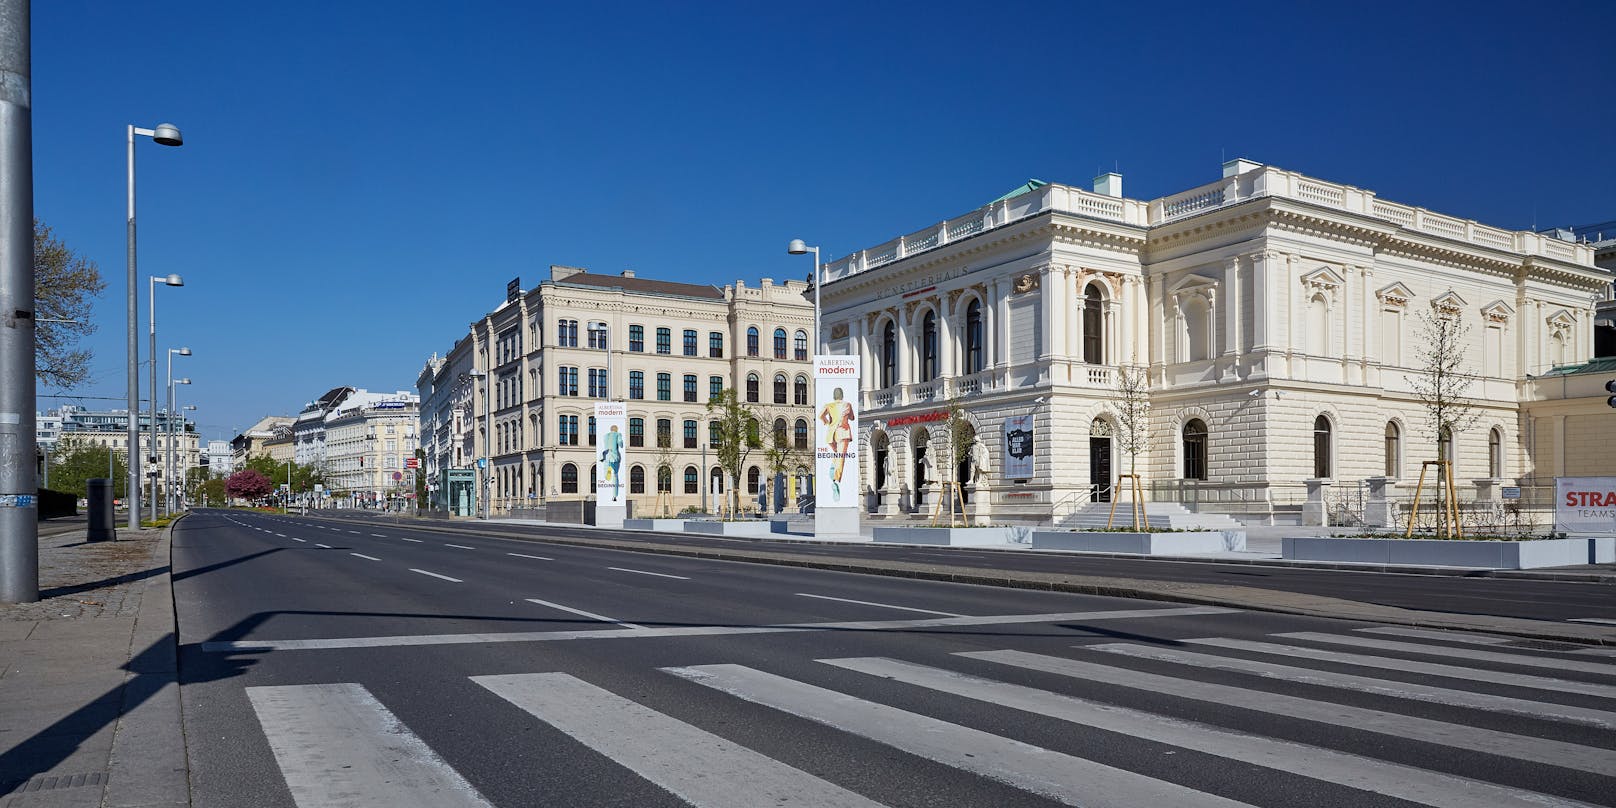 In Wien waren die Straßen im April menschenleer.